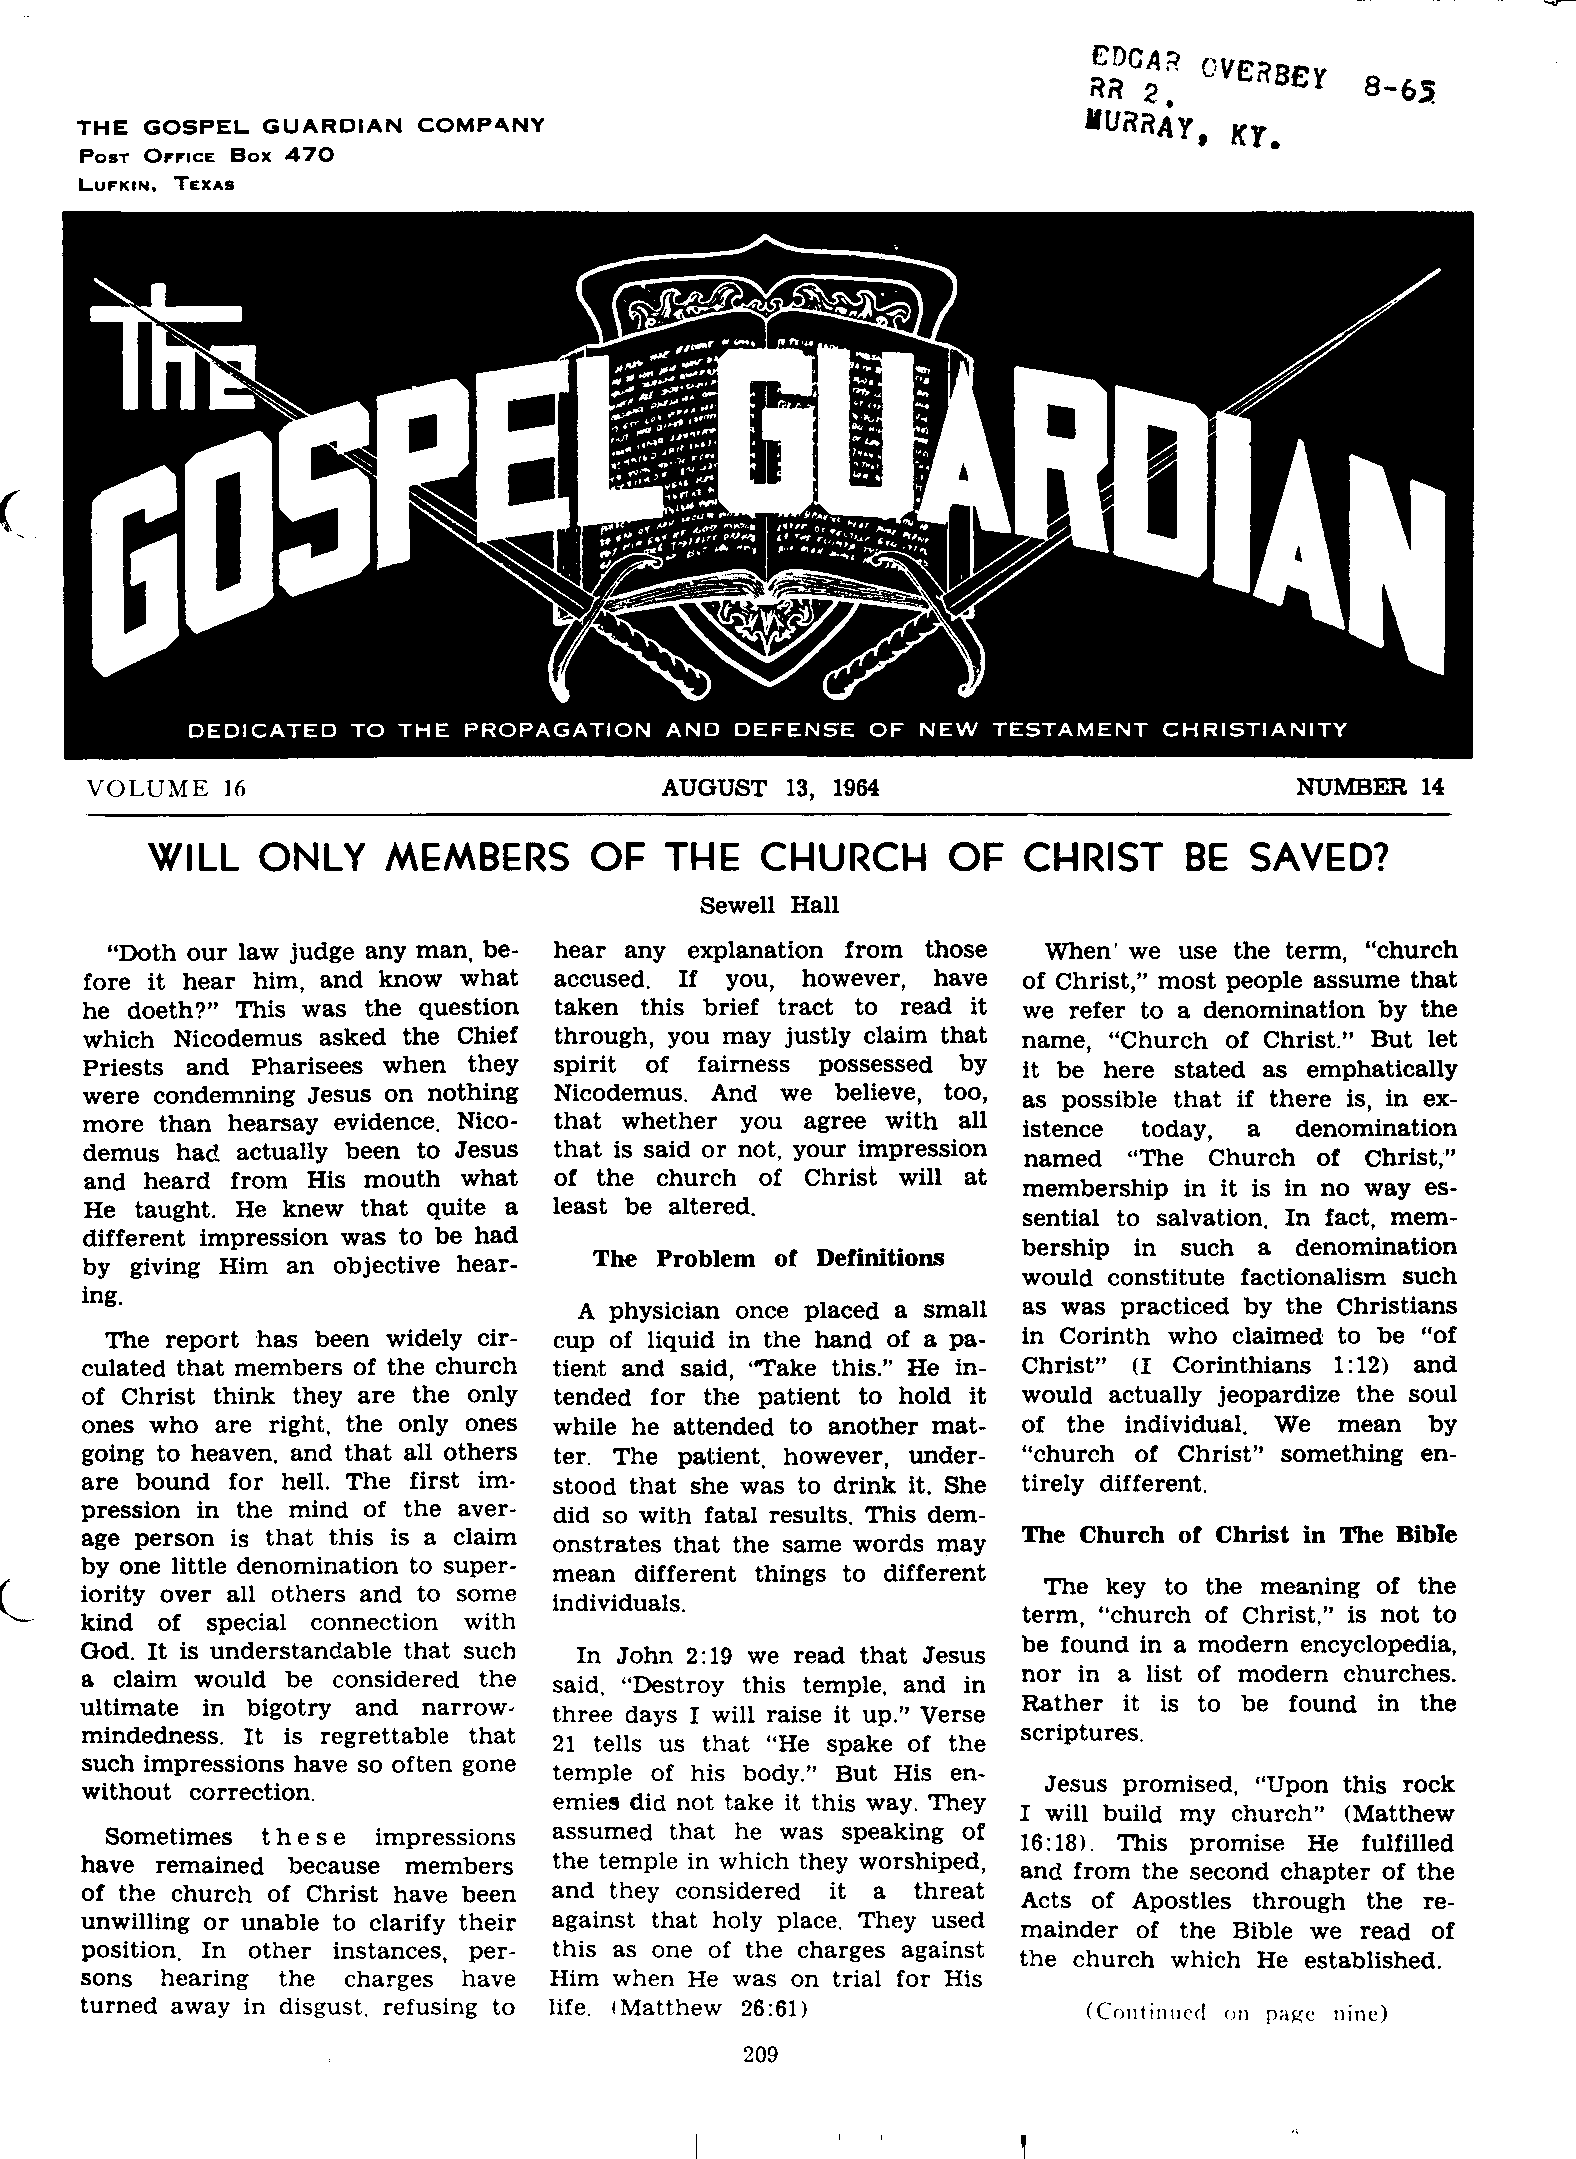 Gospel Guardian Original: Vol.16 No.14 Pg.1